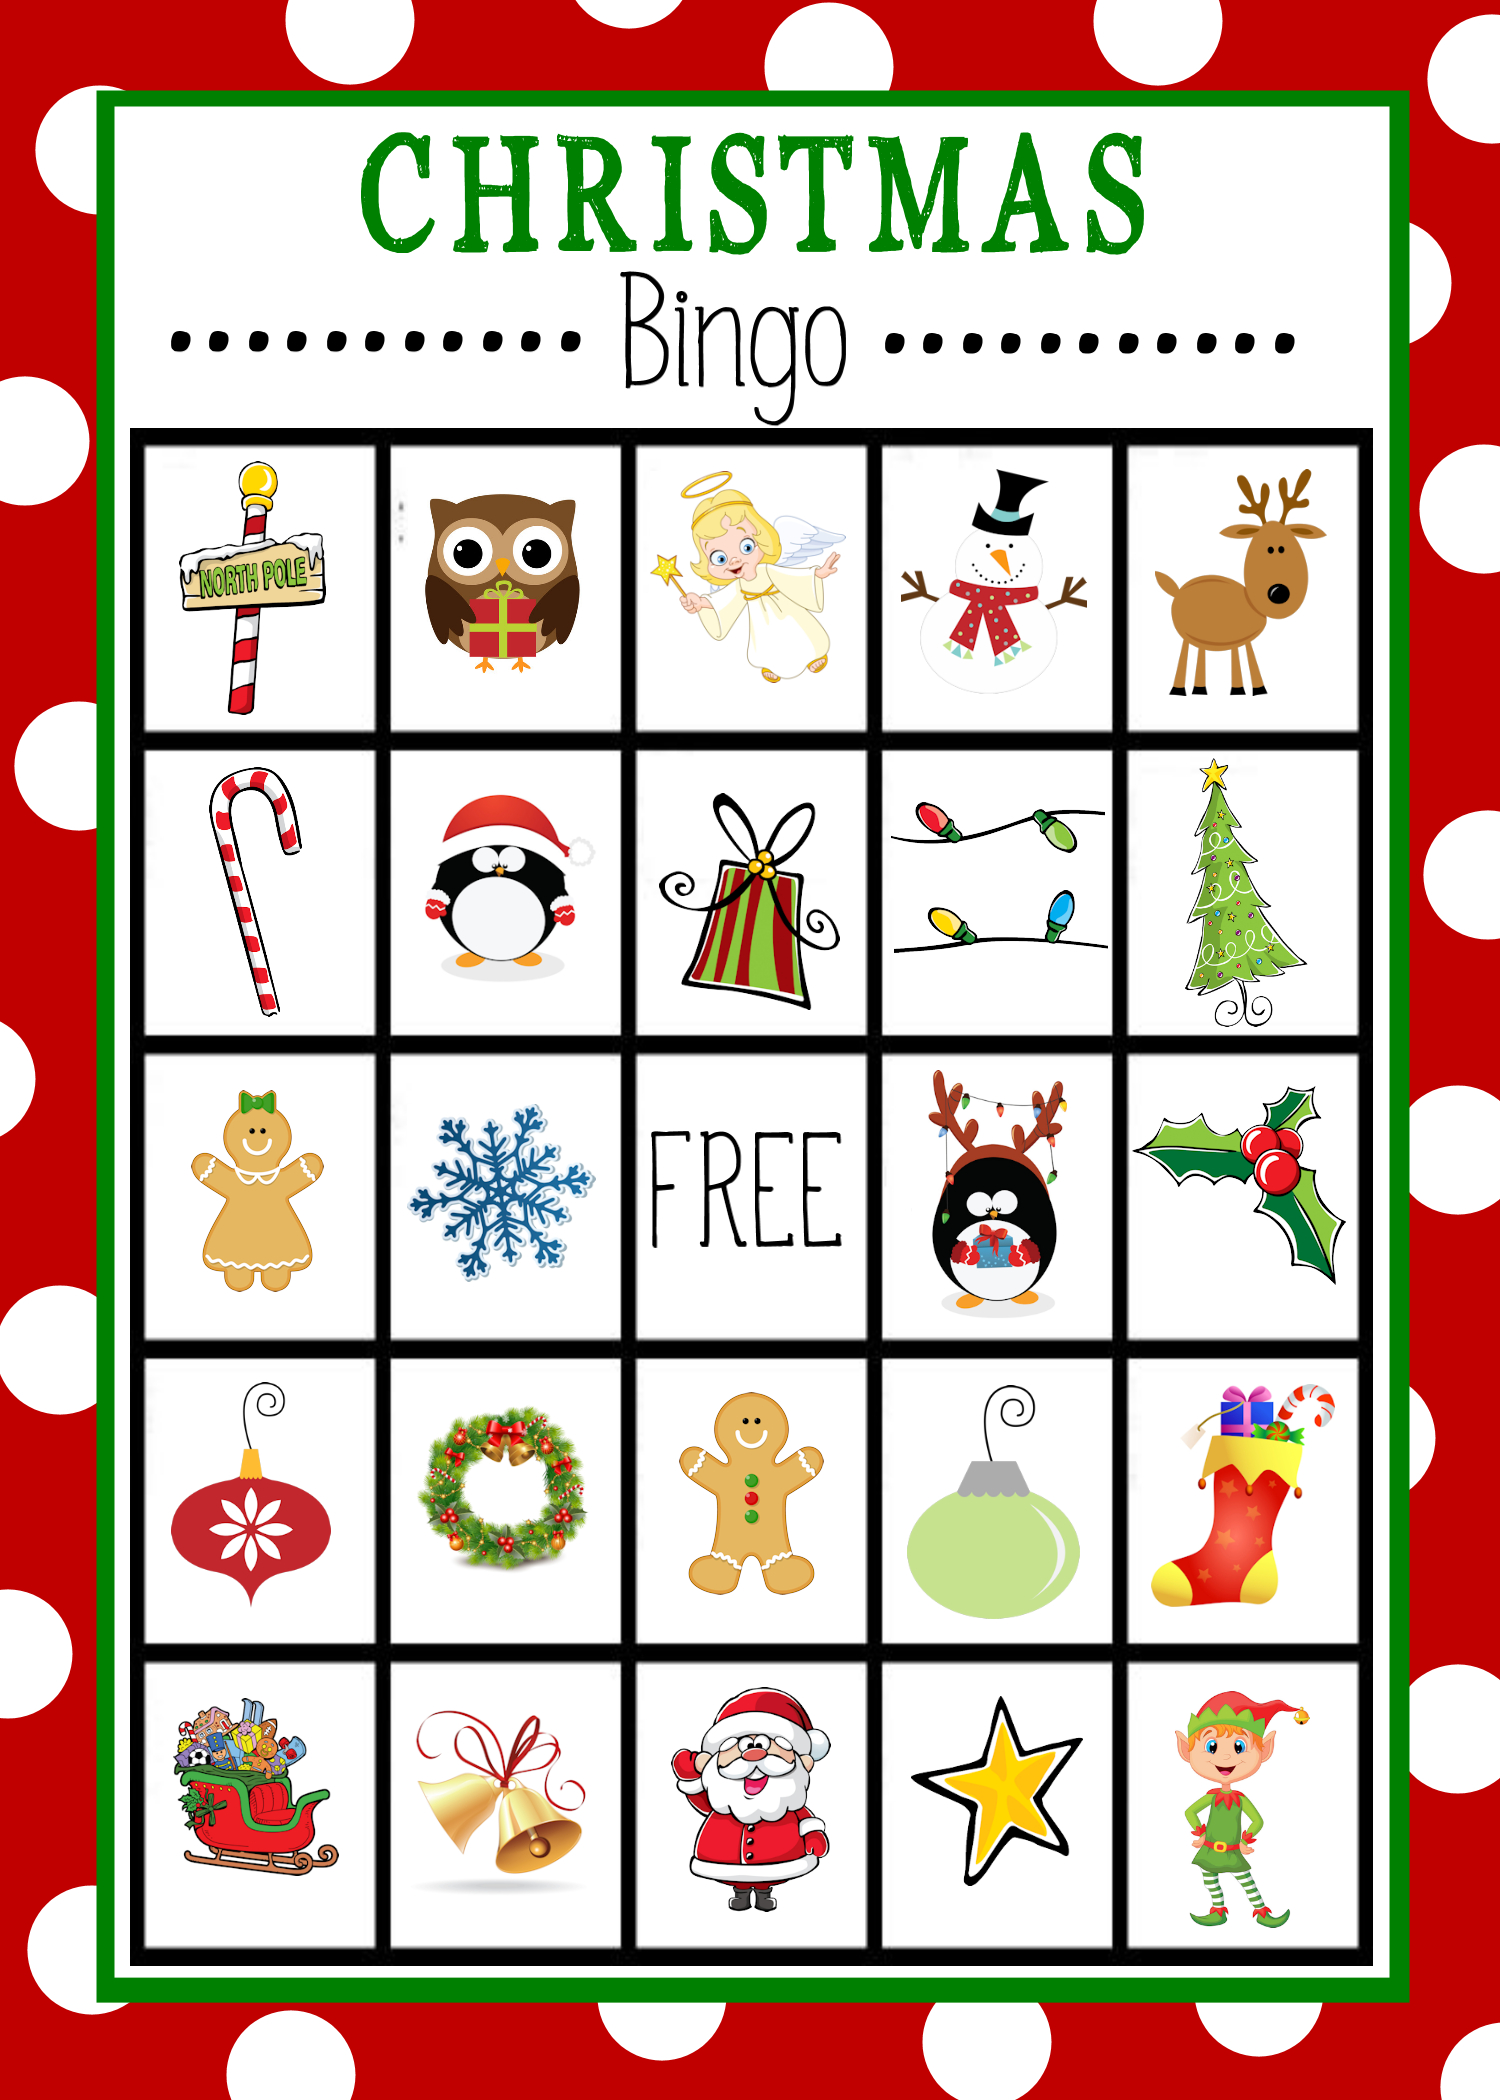 Free Printable Christmas Bingo Game | Christmas | Pinterest - Free Printable Christmas Bingo